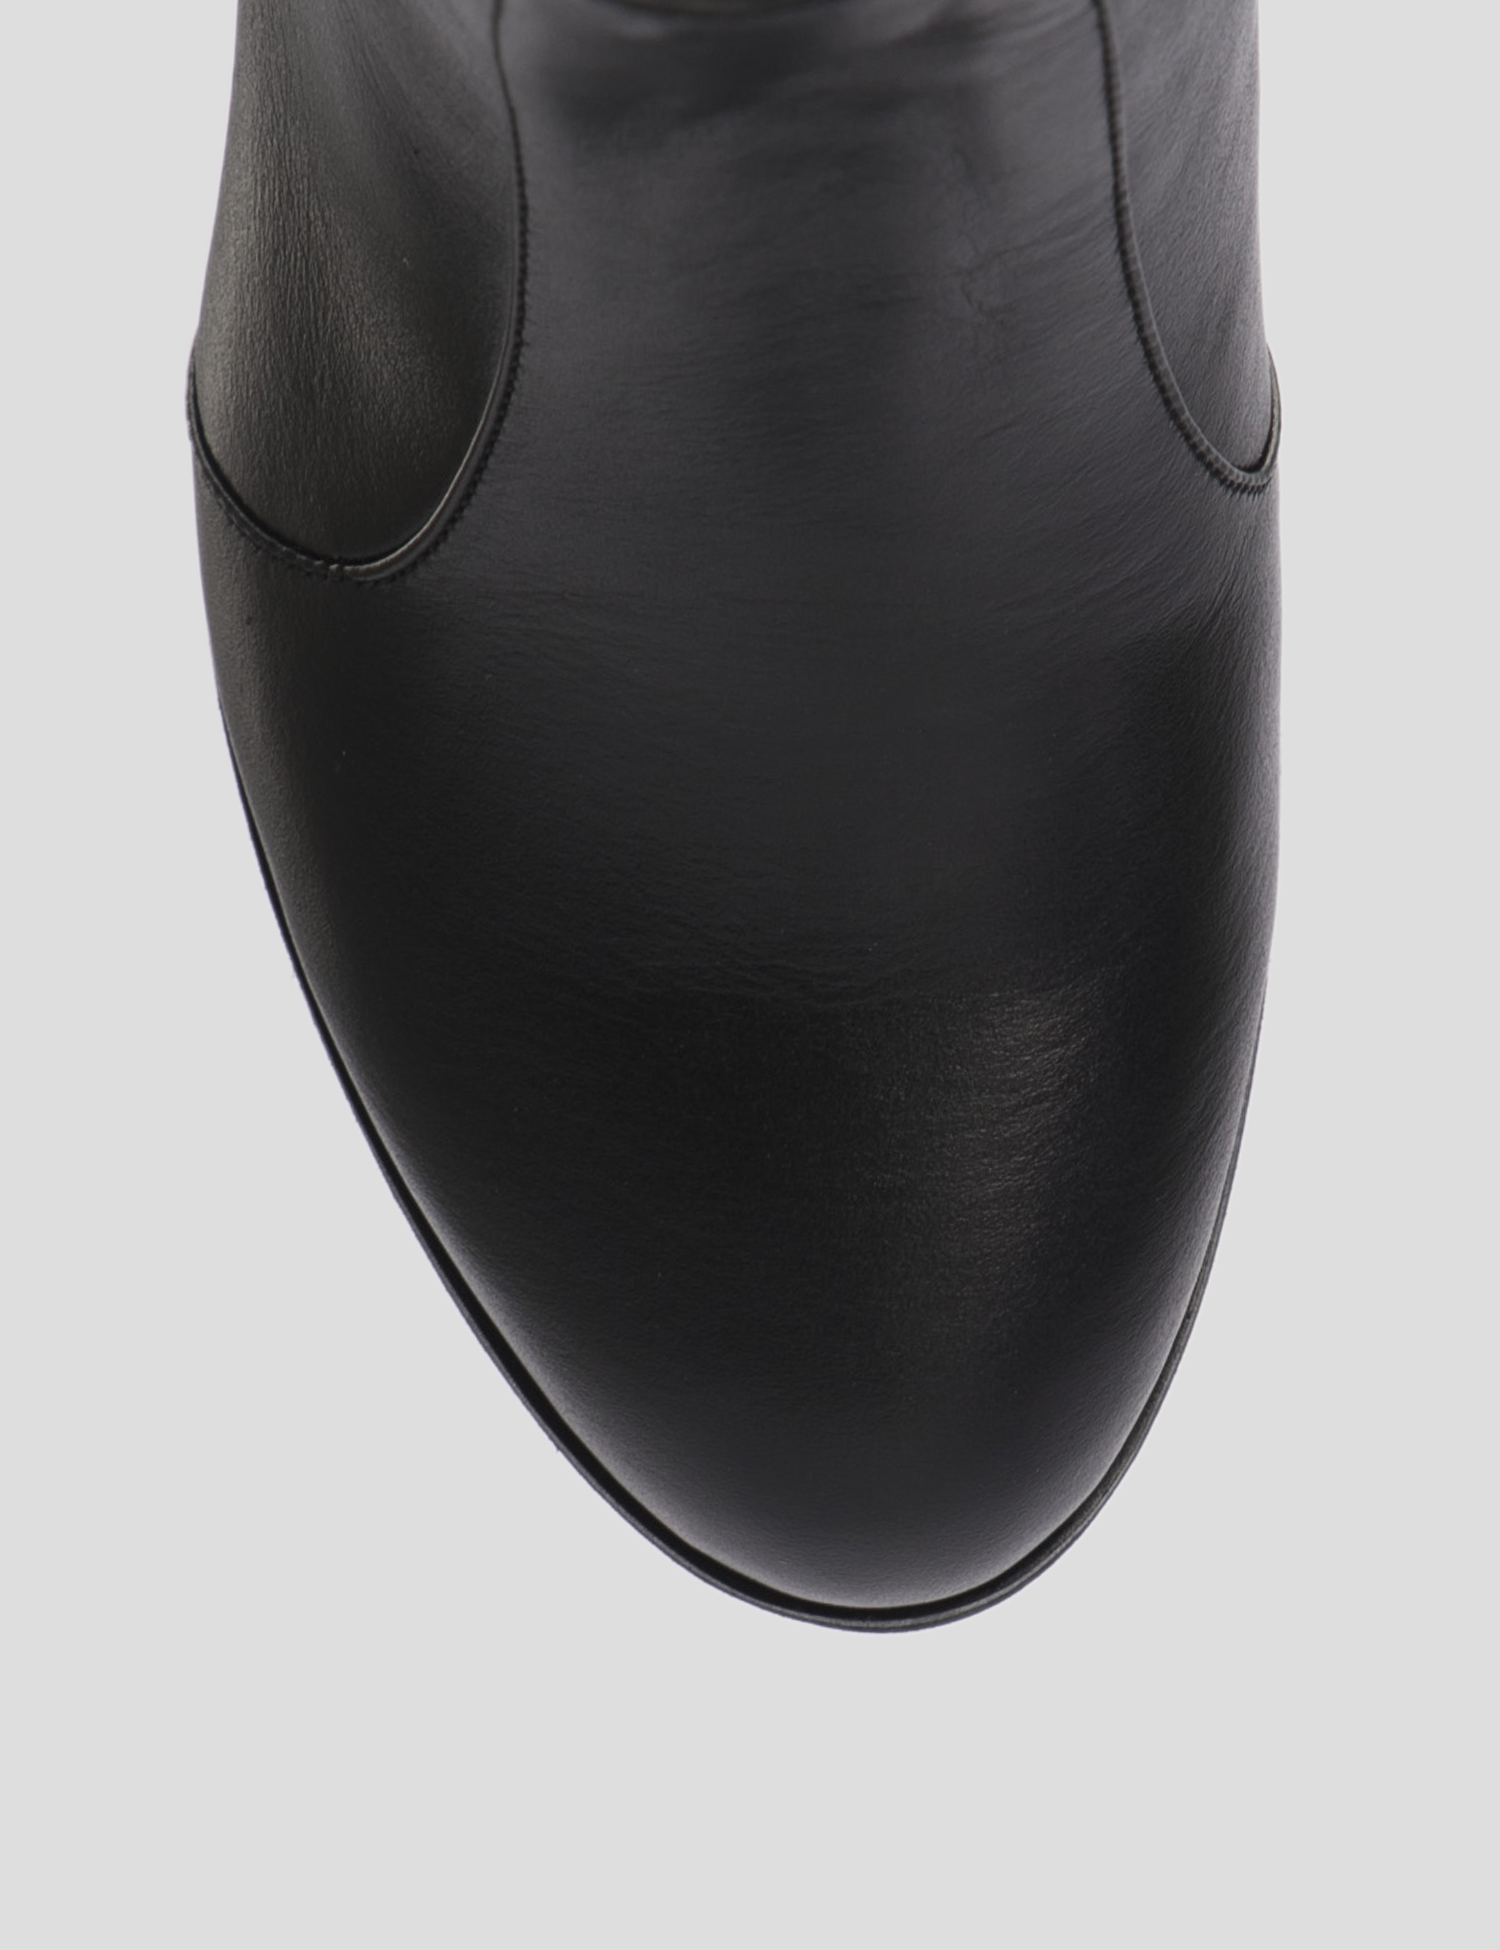 Картинка Жіночі чорно-білі шкіряні чоботи